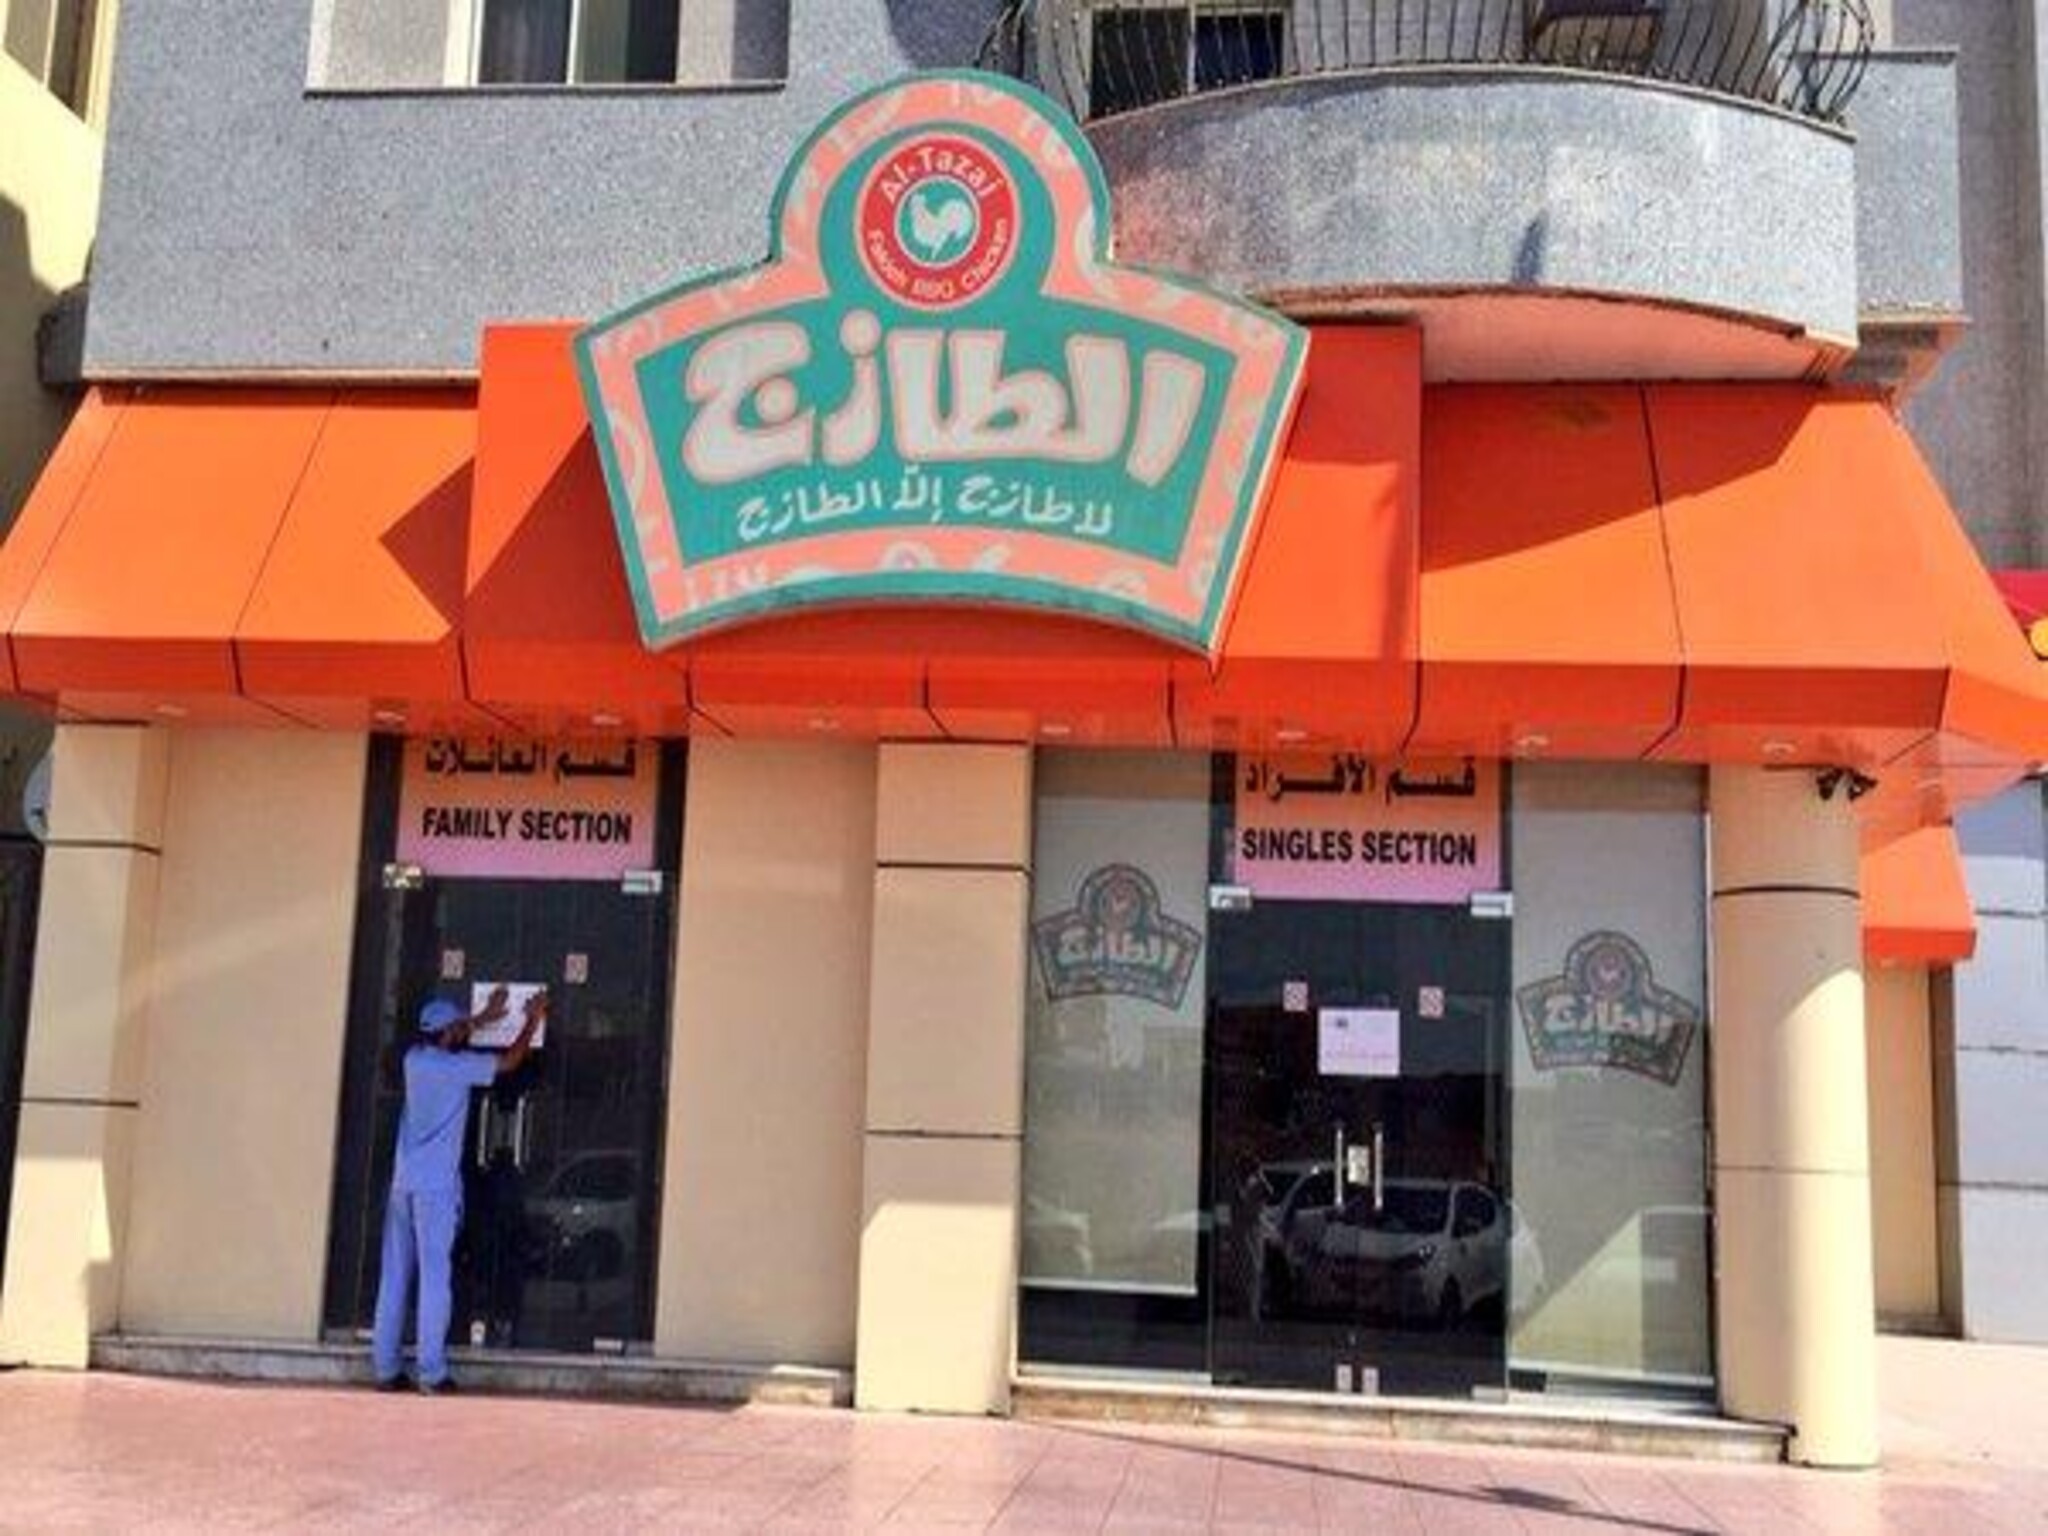 تعرف علي عناوين وأرقام كل فروع مطعم الطازج في أنحاء المملكة السعودية